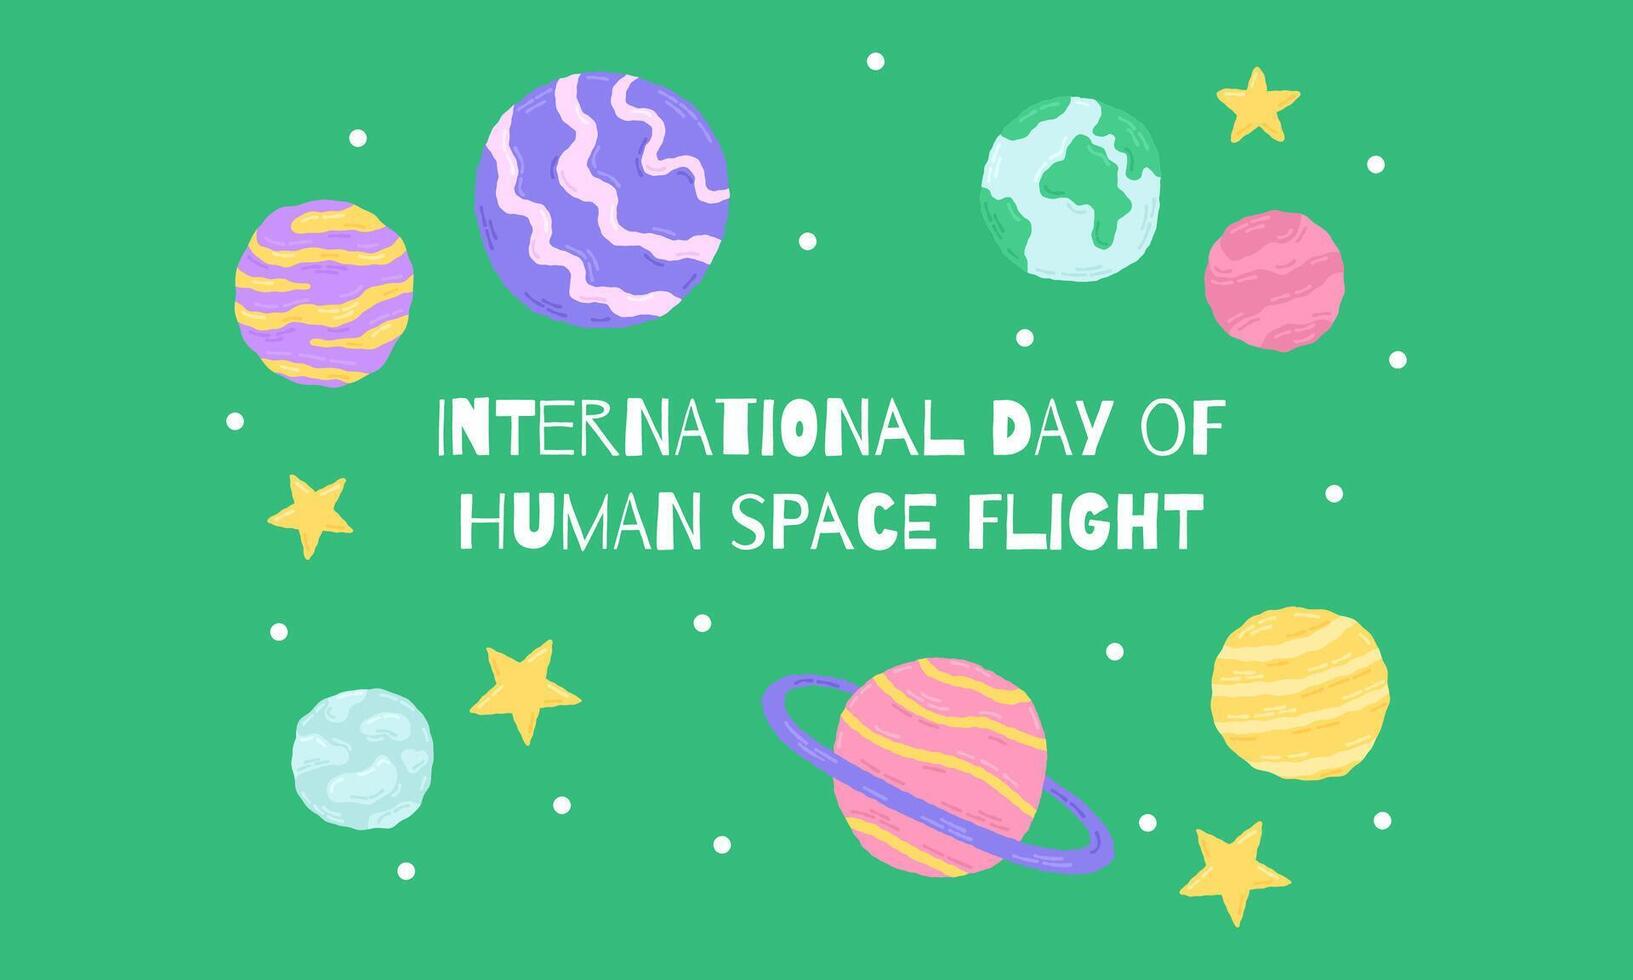 12 aprile internazionale giorno di umano spazio volo. galassia manifesto con lettering e pianeti. mano disegnato piatto cartone animato elementi. vettore illustrazione